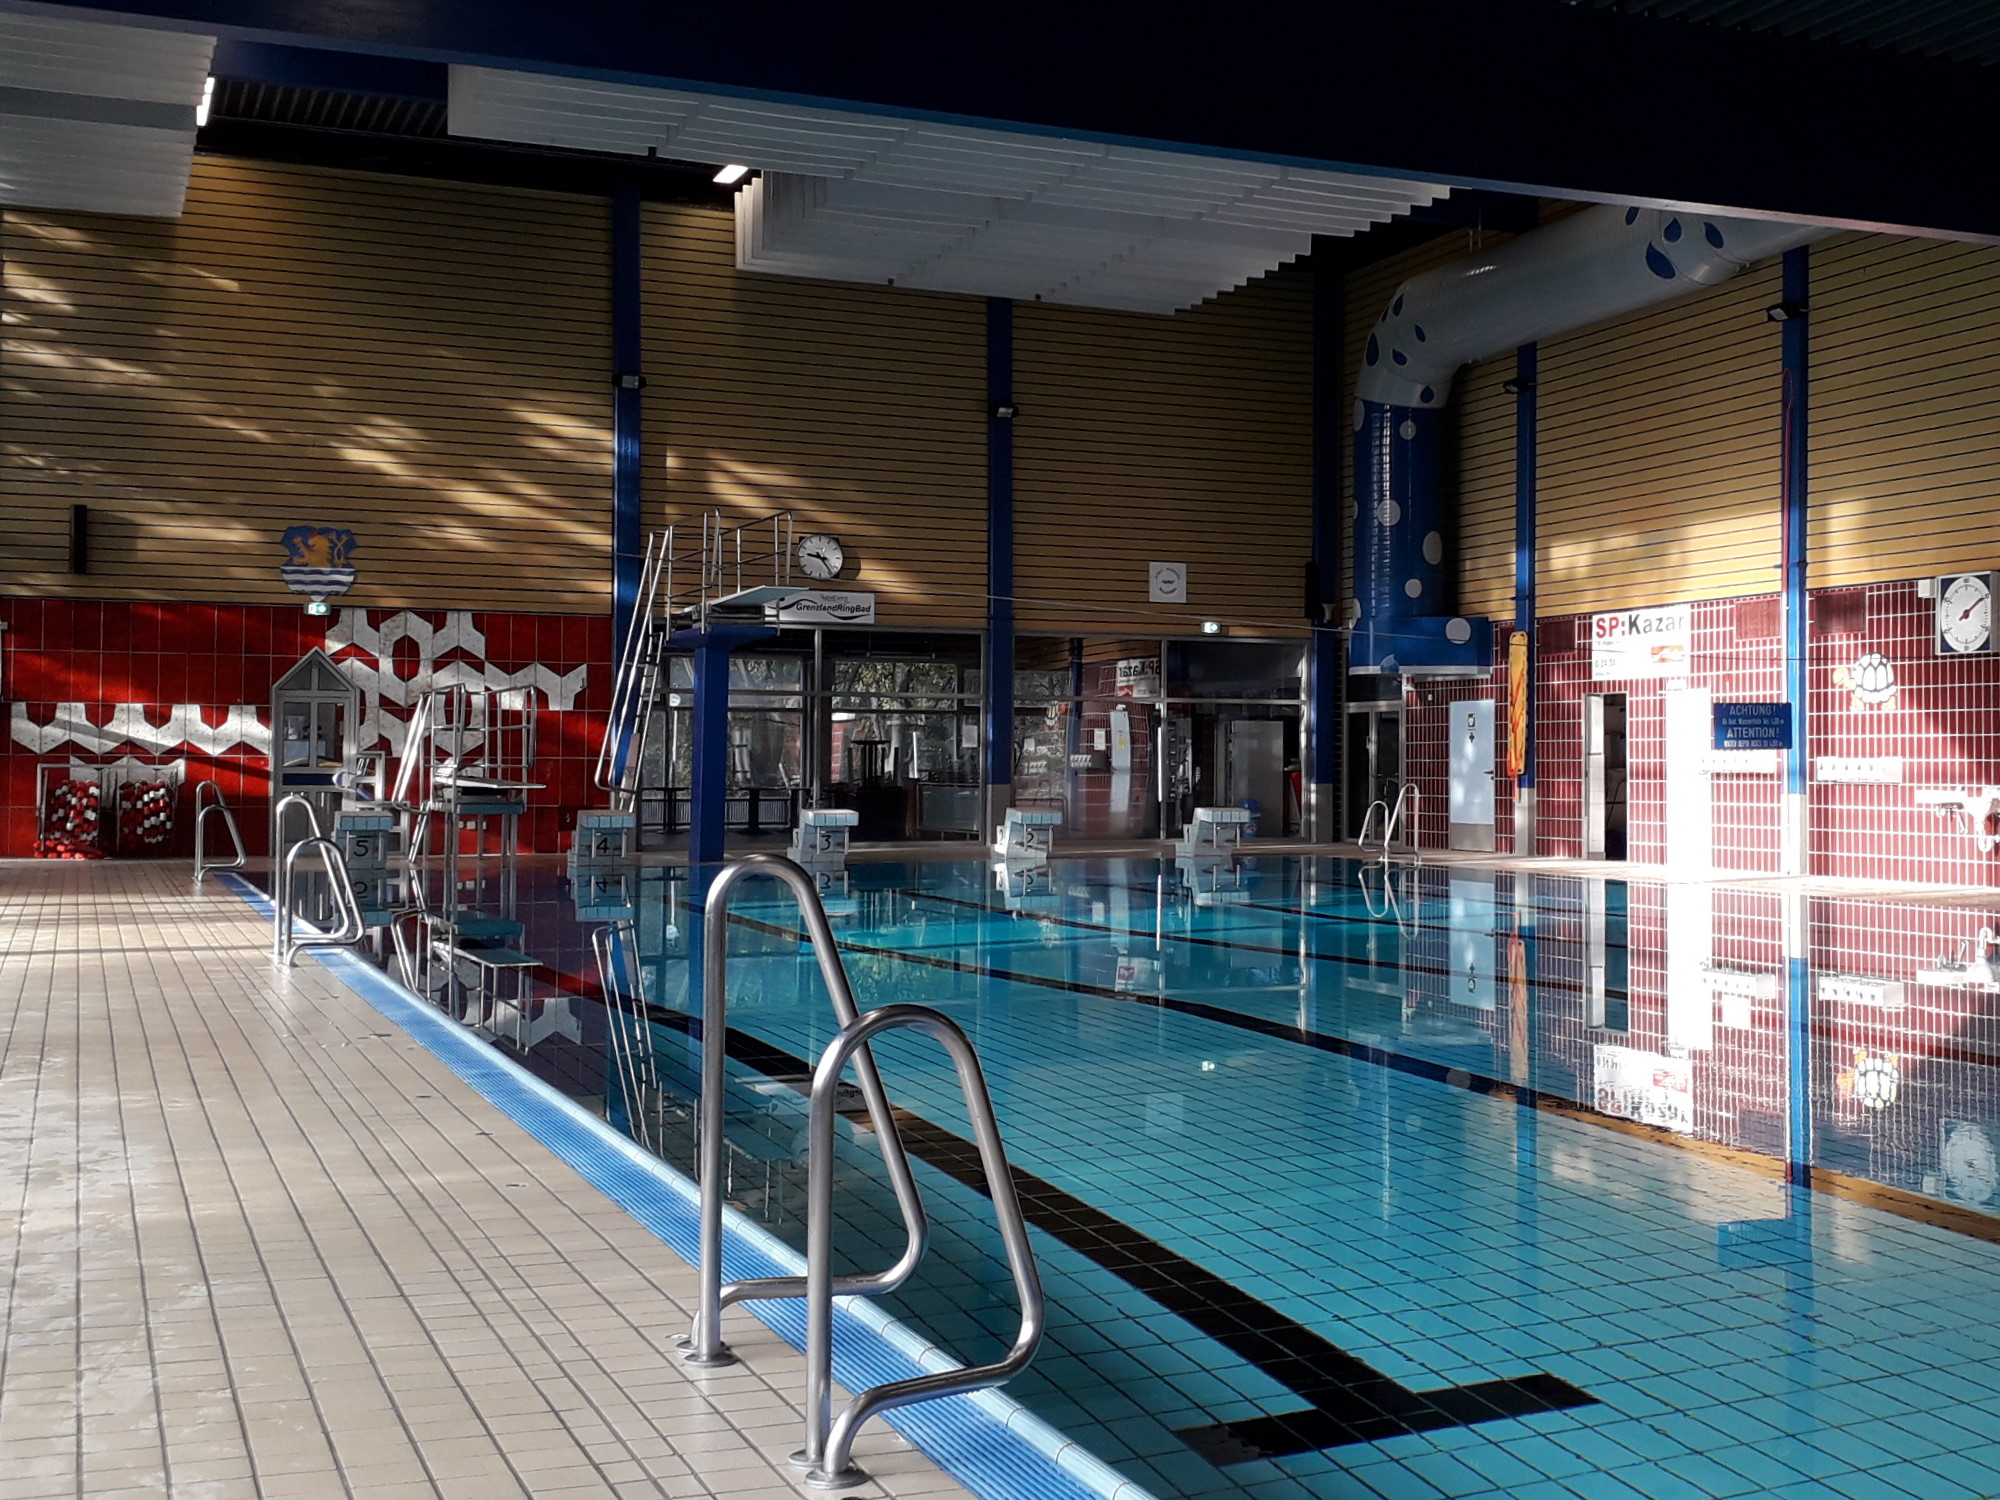 Das Bild zeigt ein Schwimmbecken mit Bahnen, Startblöcken, Sprungtürmen und Treppen.